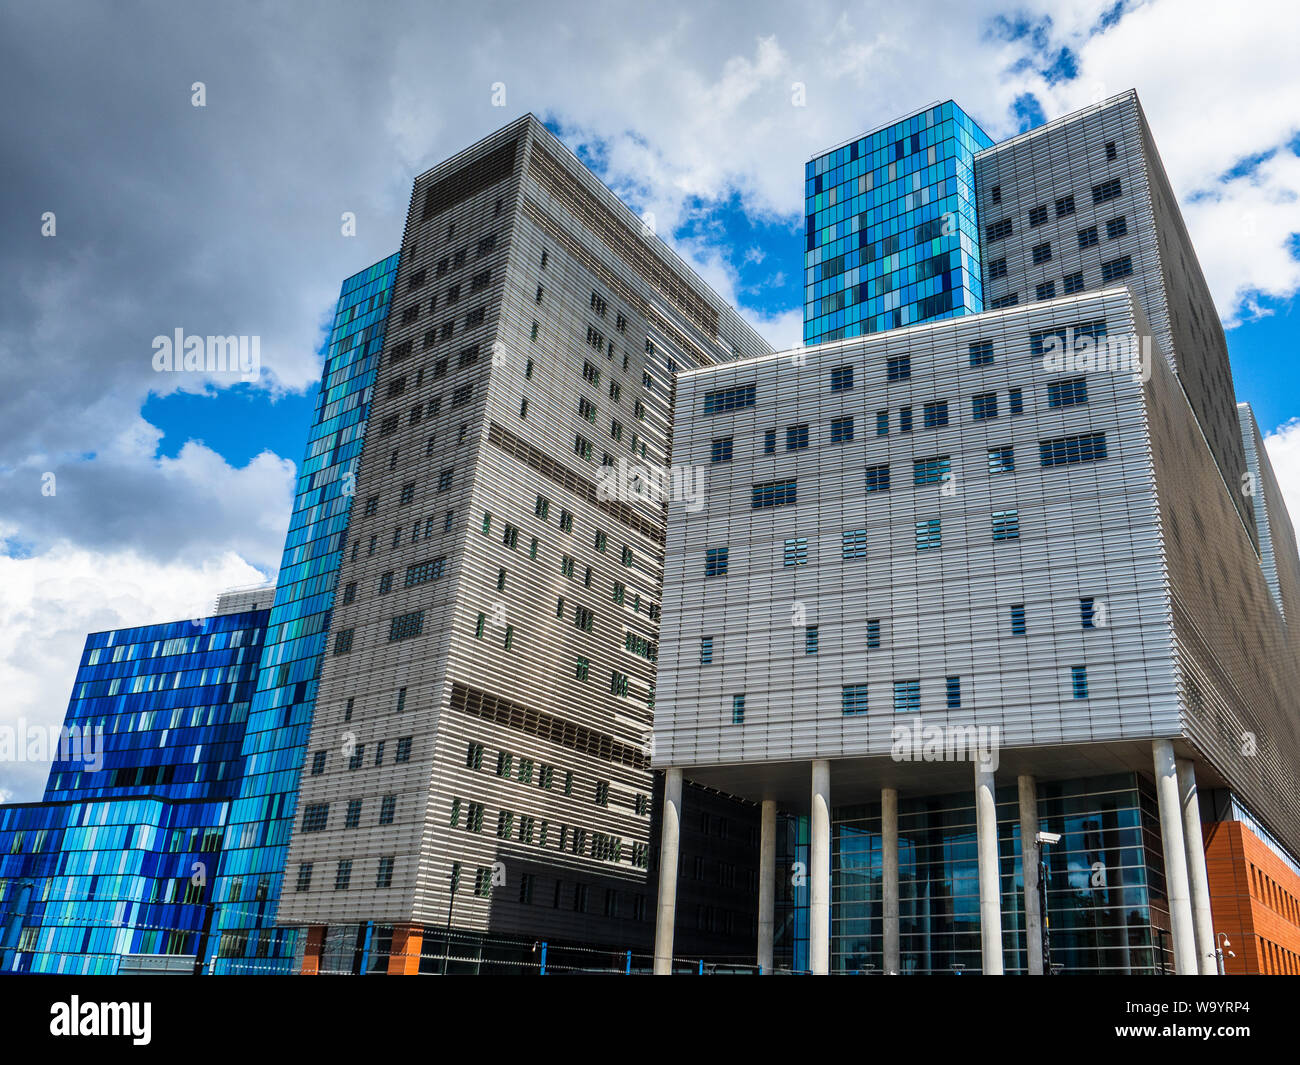 Il Royal London Hospital di Whitechapel East London Regno Unito. Completato nel 2012, il nuovo edificio è stato progettato dagli architetti Skanska & HOK. Foto Stock